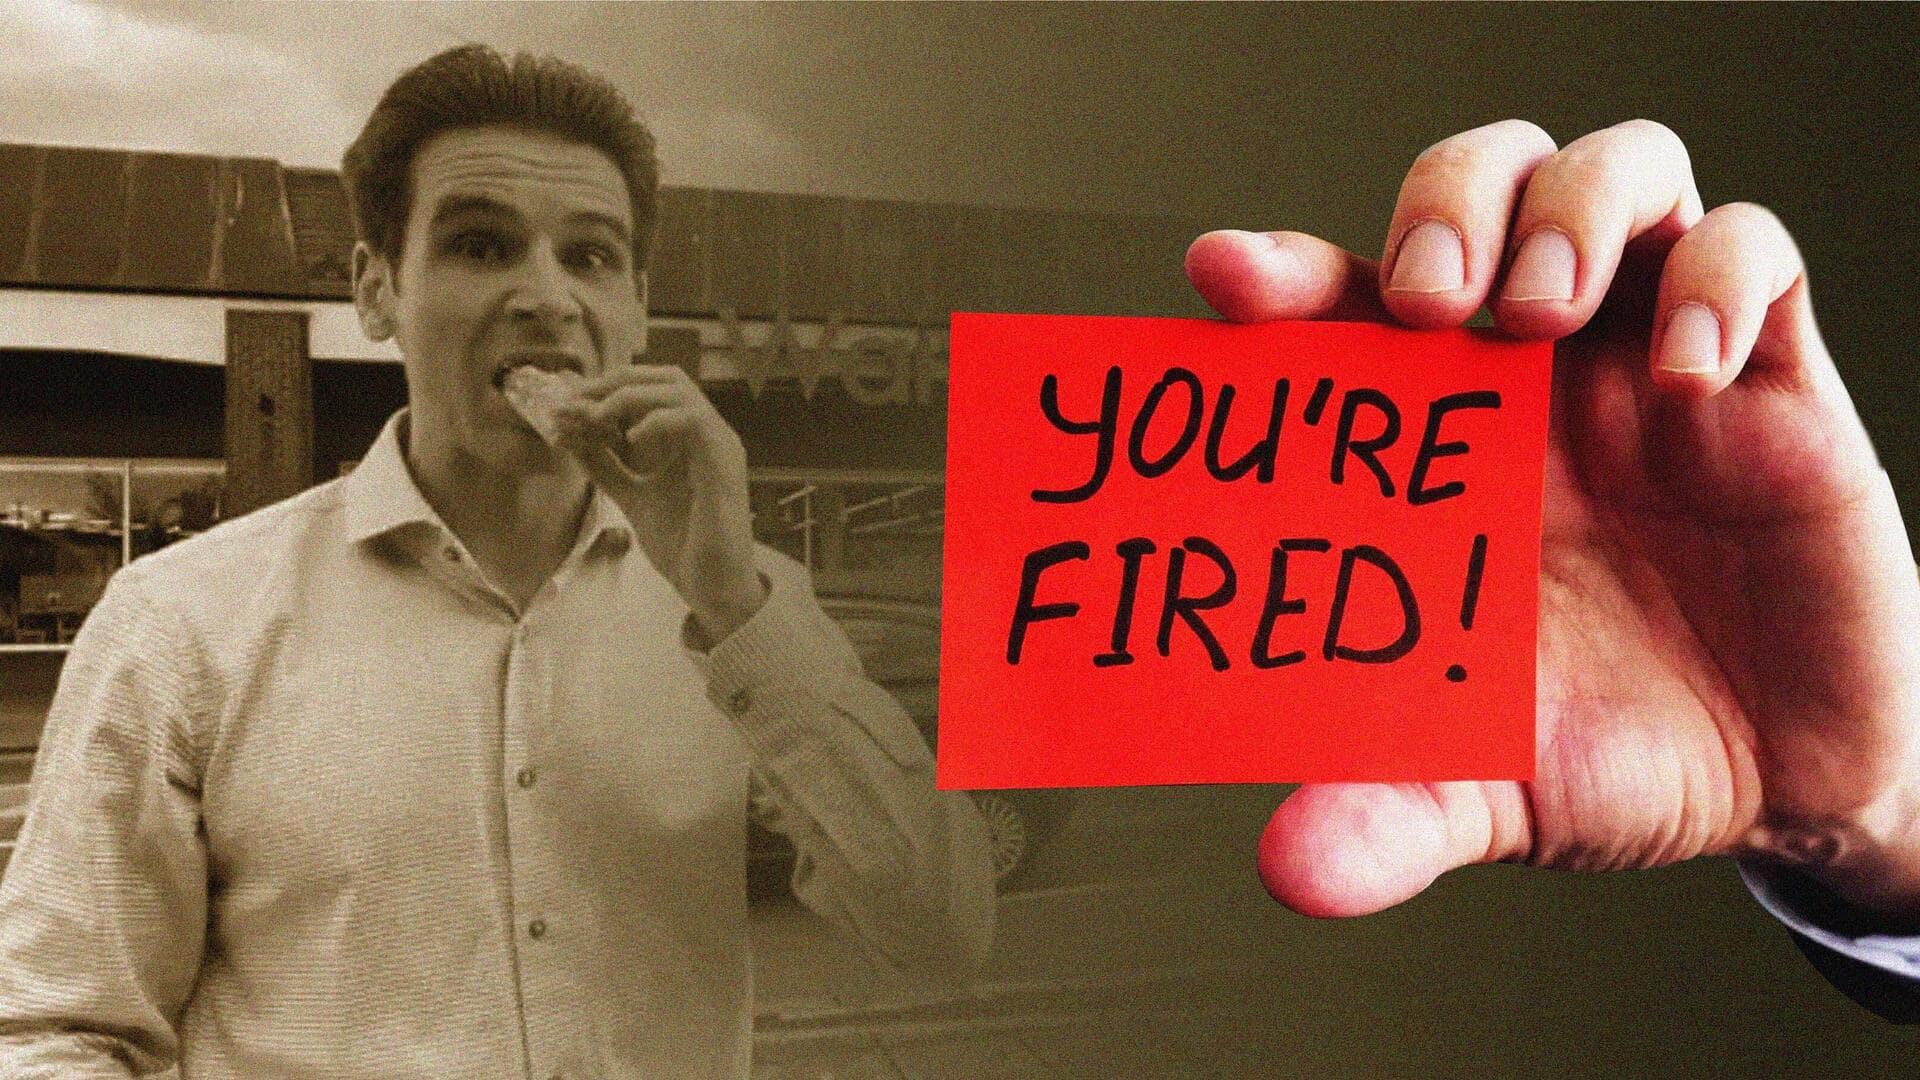 इंग्लैंड: शिफ्ट के दौरान डोनट खाने पर कर्मचारी को नौकरी से निकाला, जानिए पूरा मामला